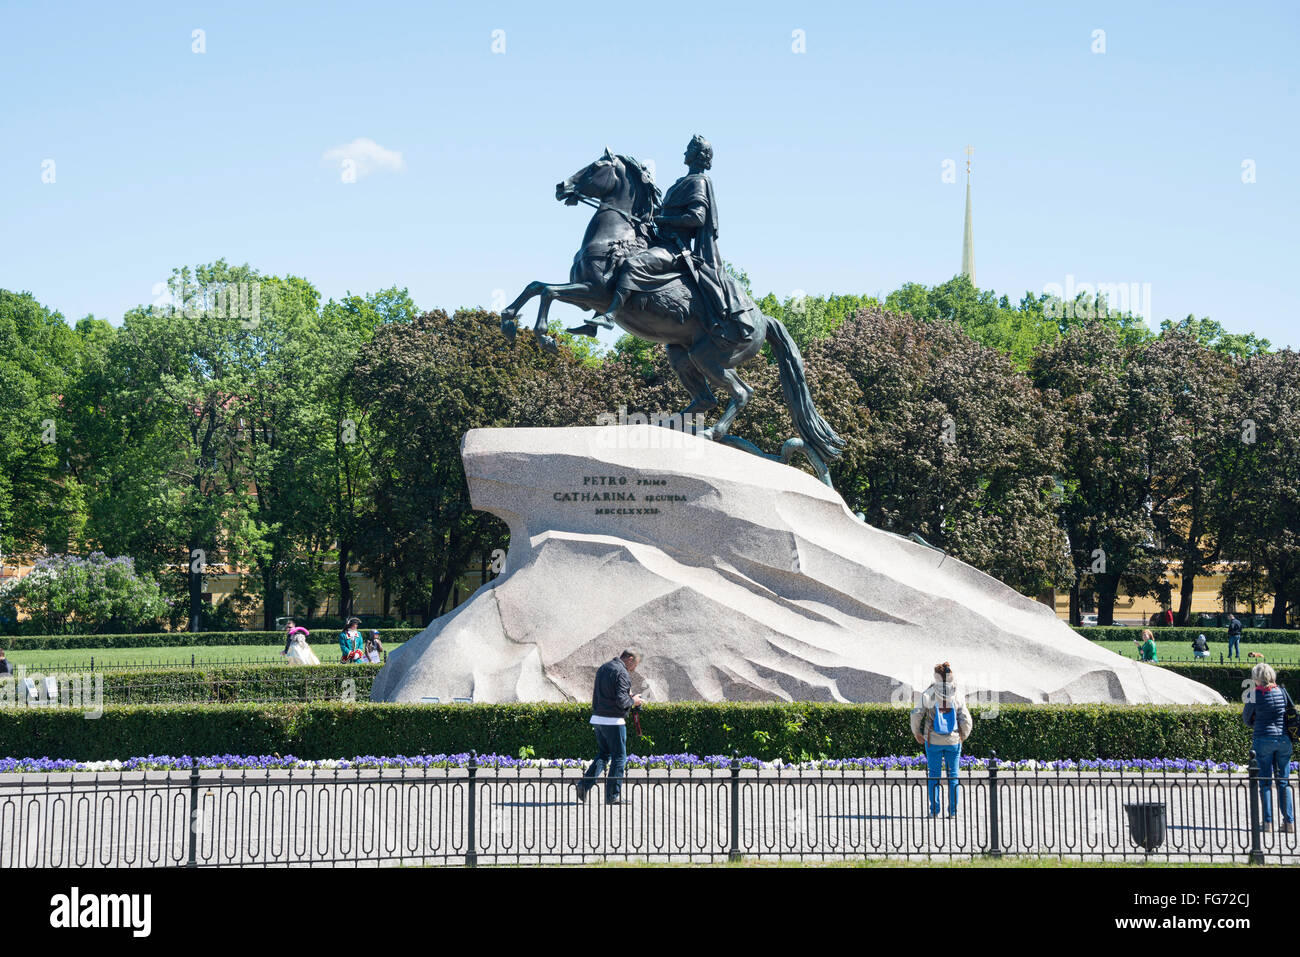 "Le cavalier de bronze statue sur des rives du fleuve Neva, Saint Petersburg, Fédération de Russie, Région Nord-Ouest Banque D'Images